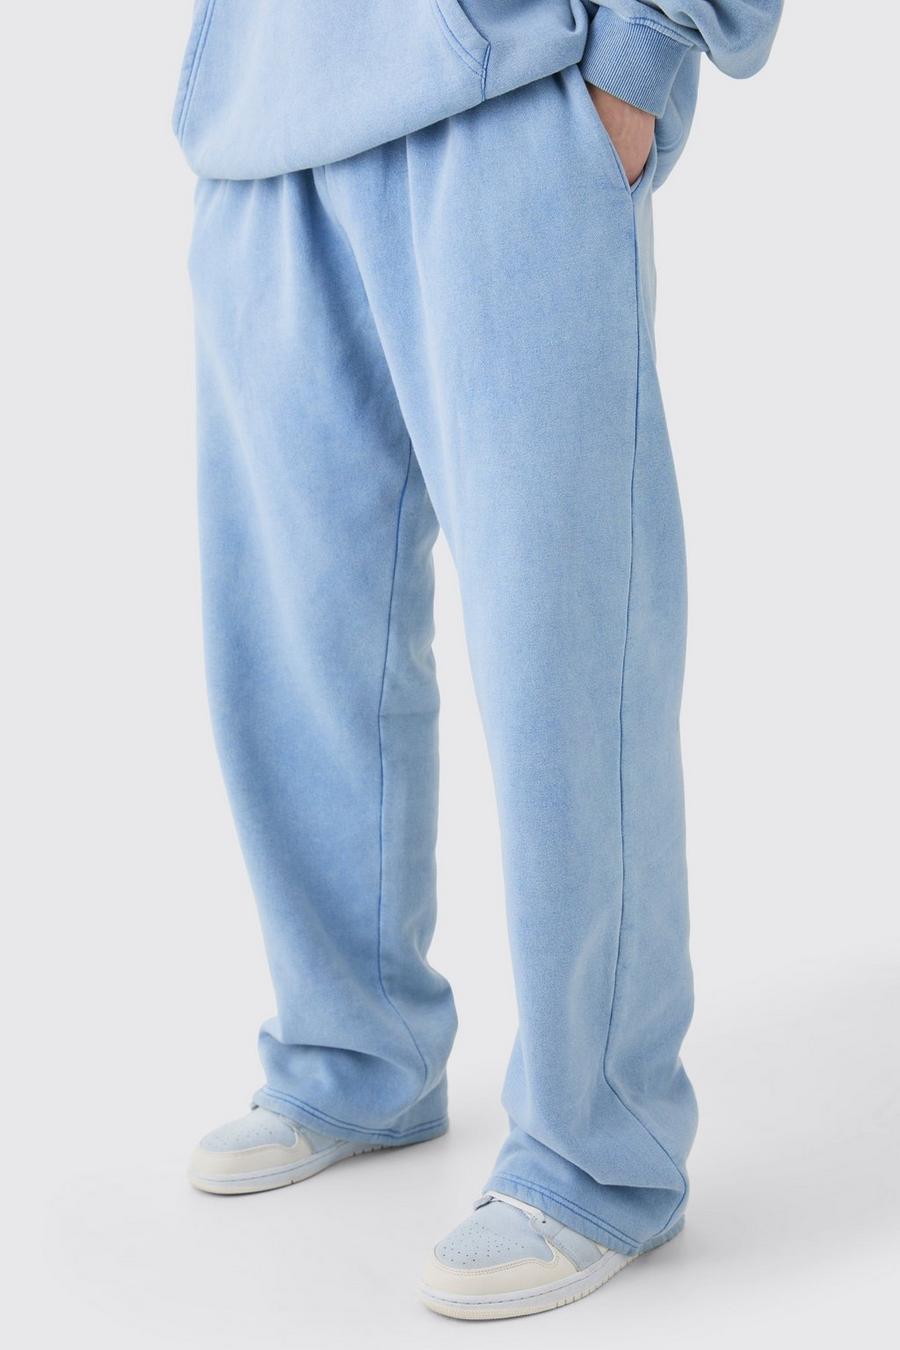 Pantaloni tuta Tall rilassati in lavaggio riciclato, Cornflower blue